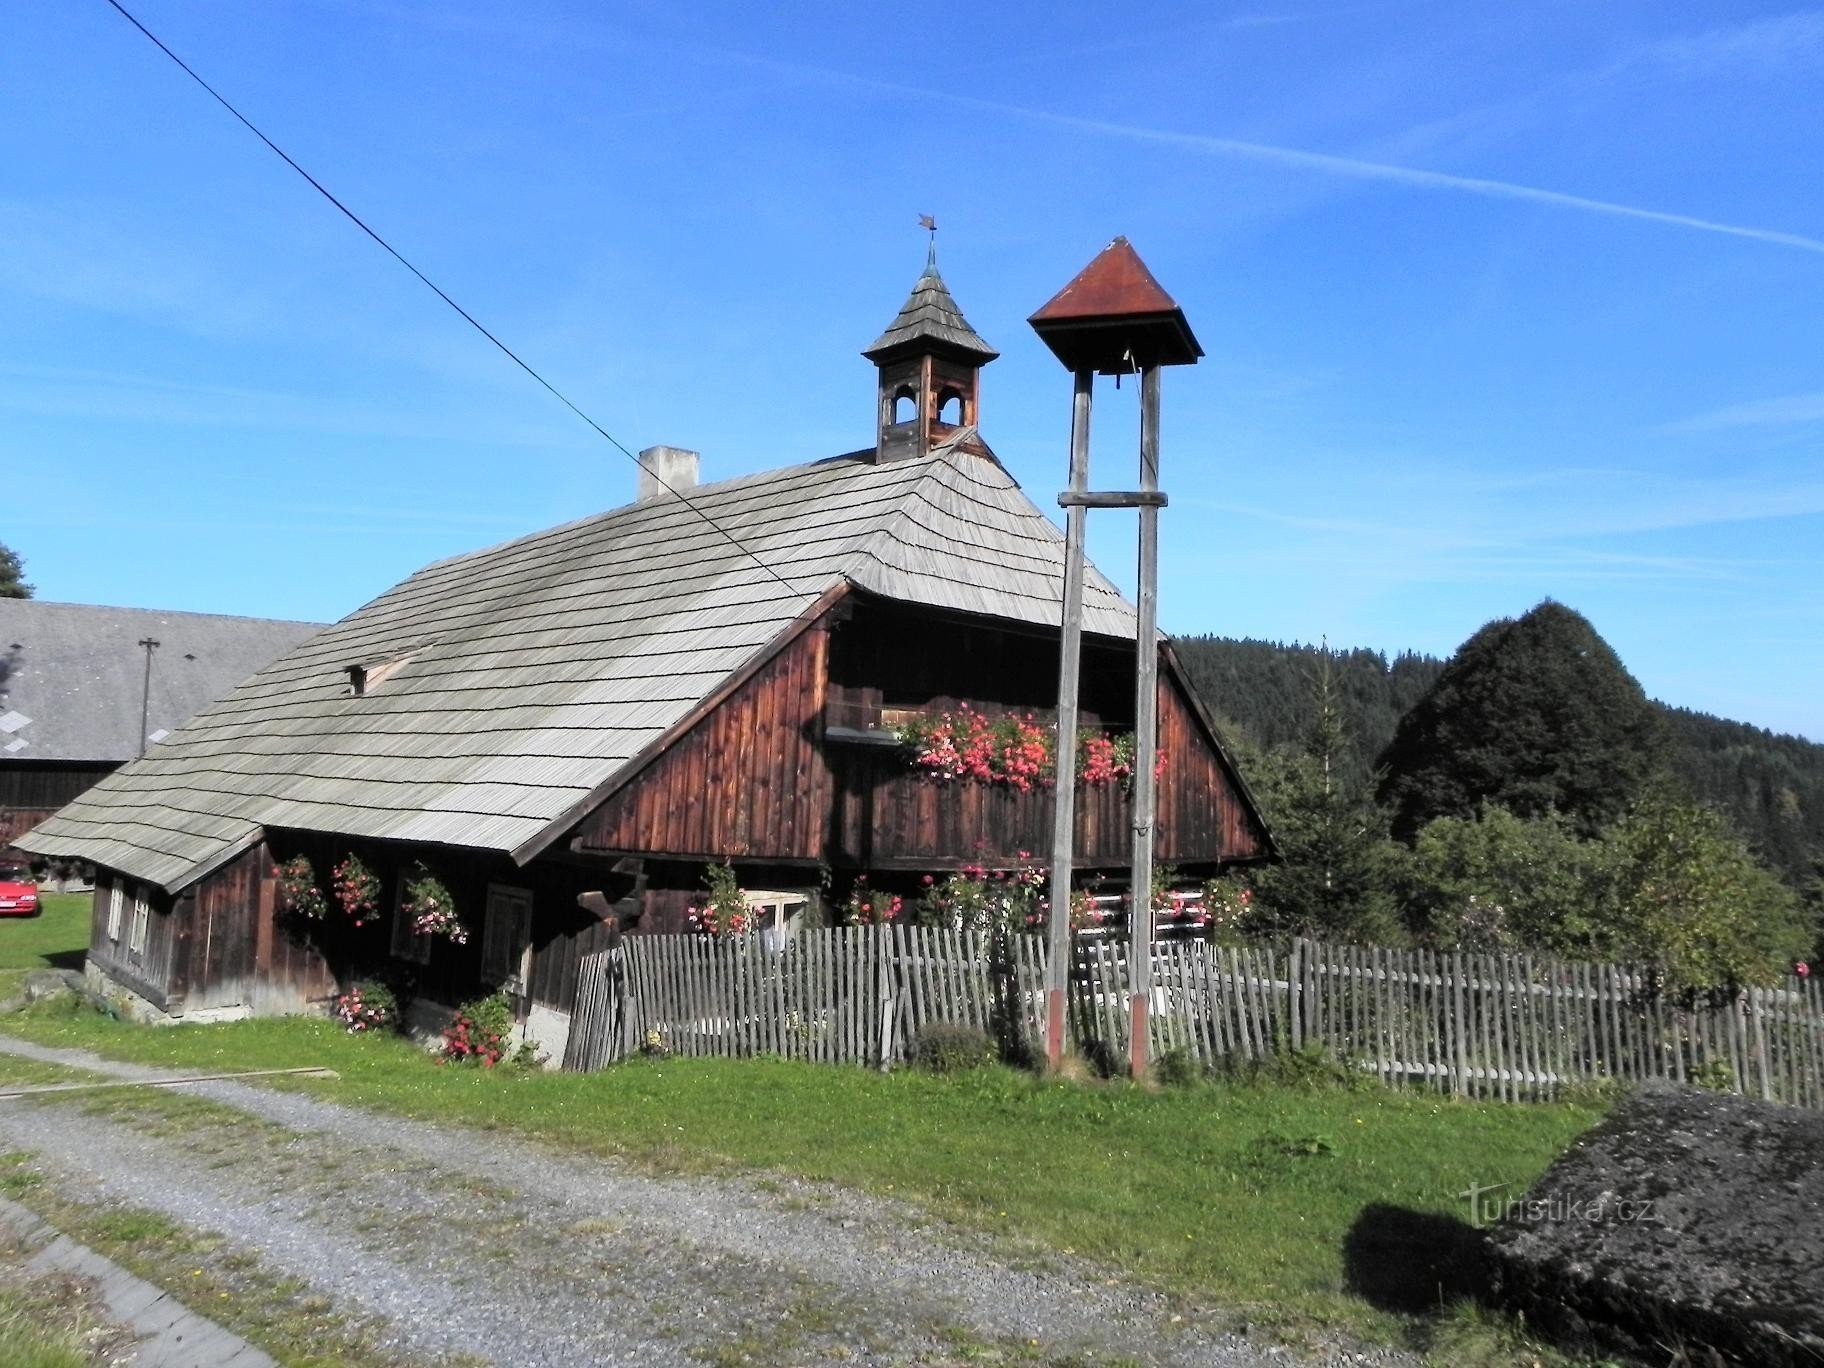 Zvíkov, cabana de madeira e torre sineira